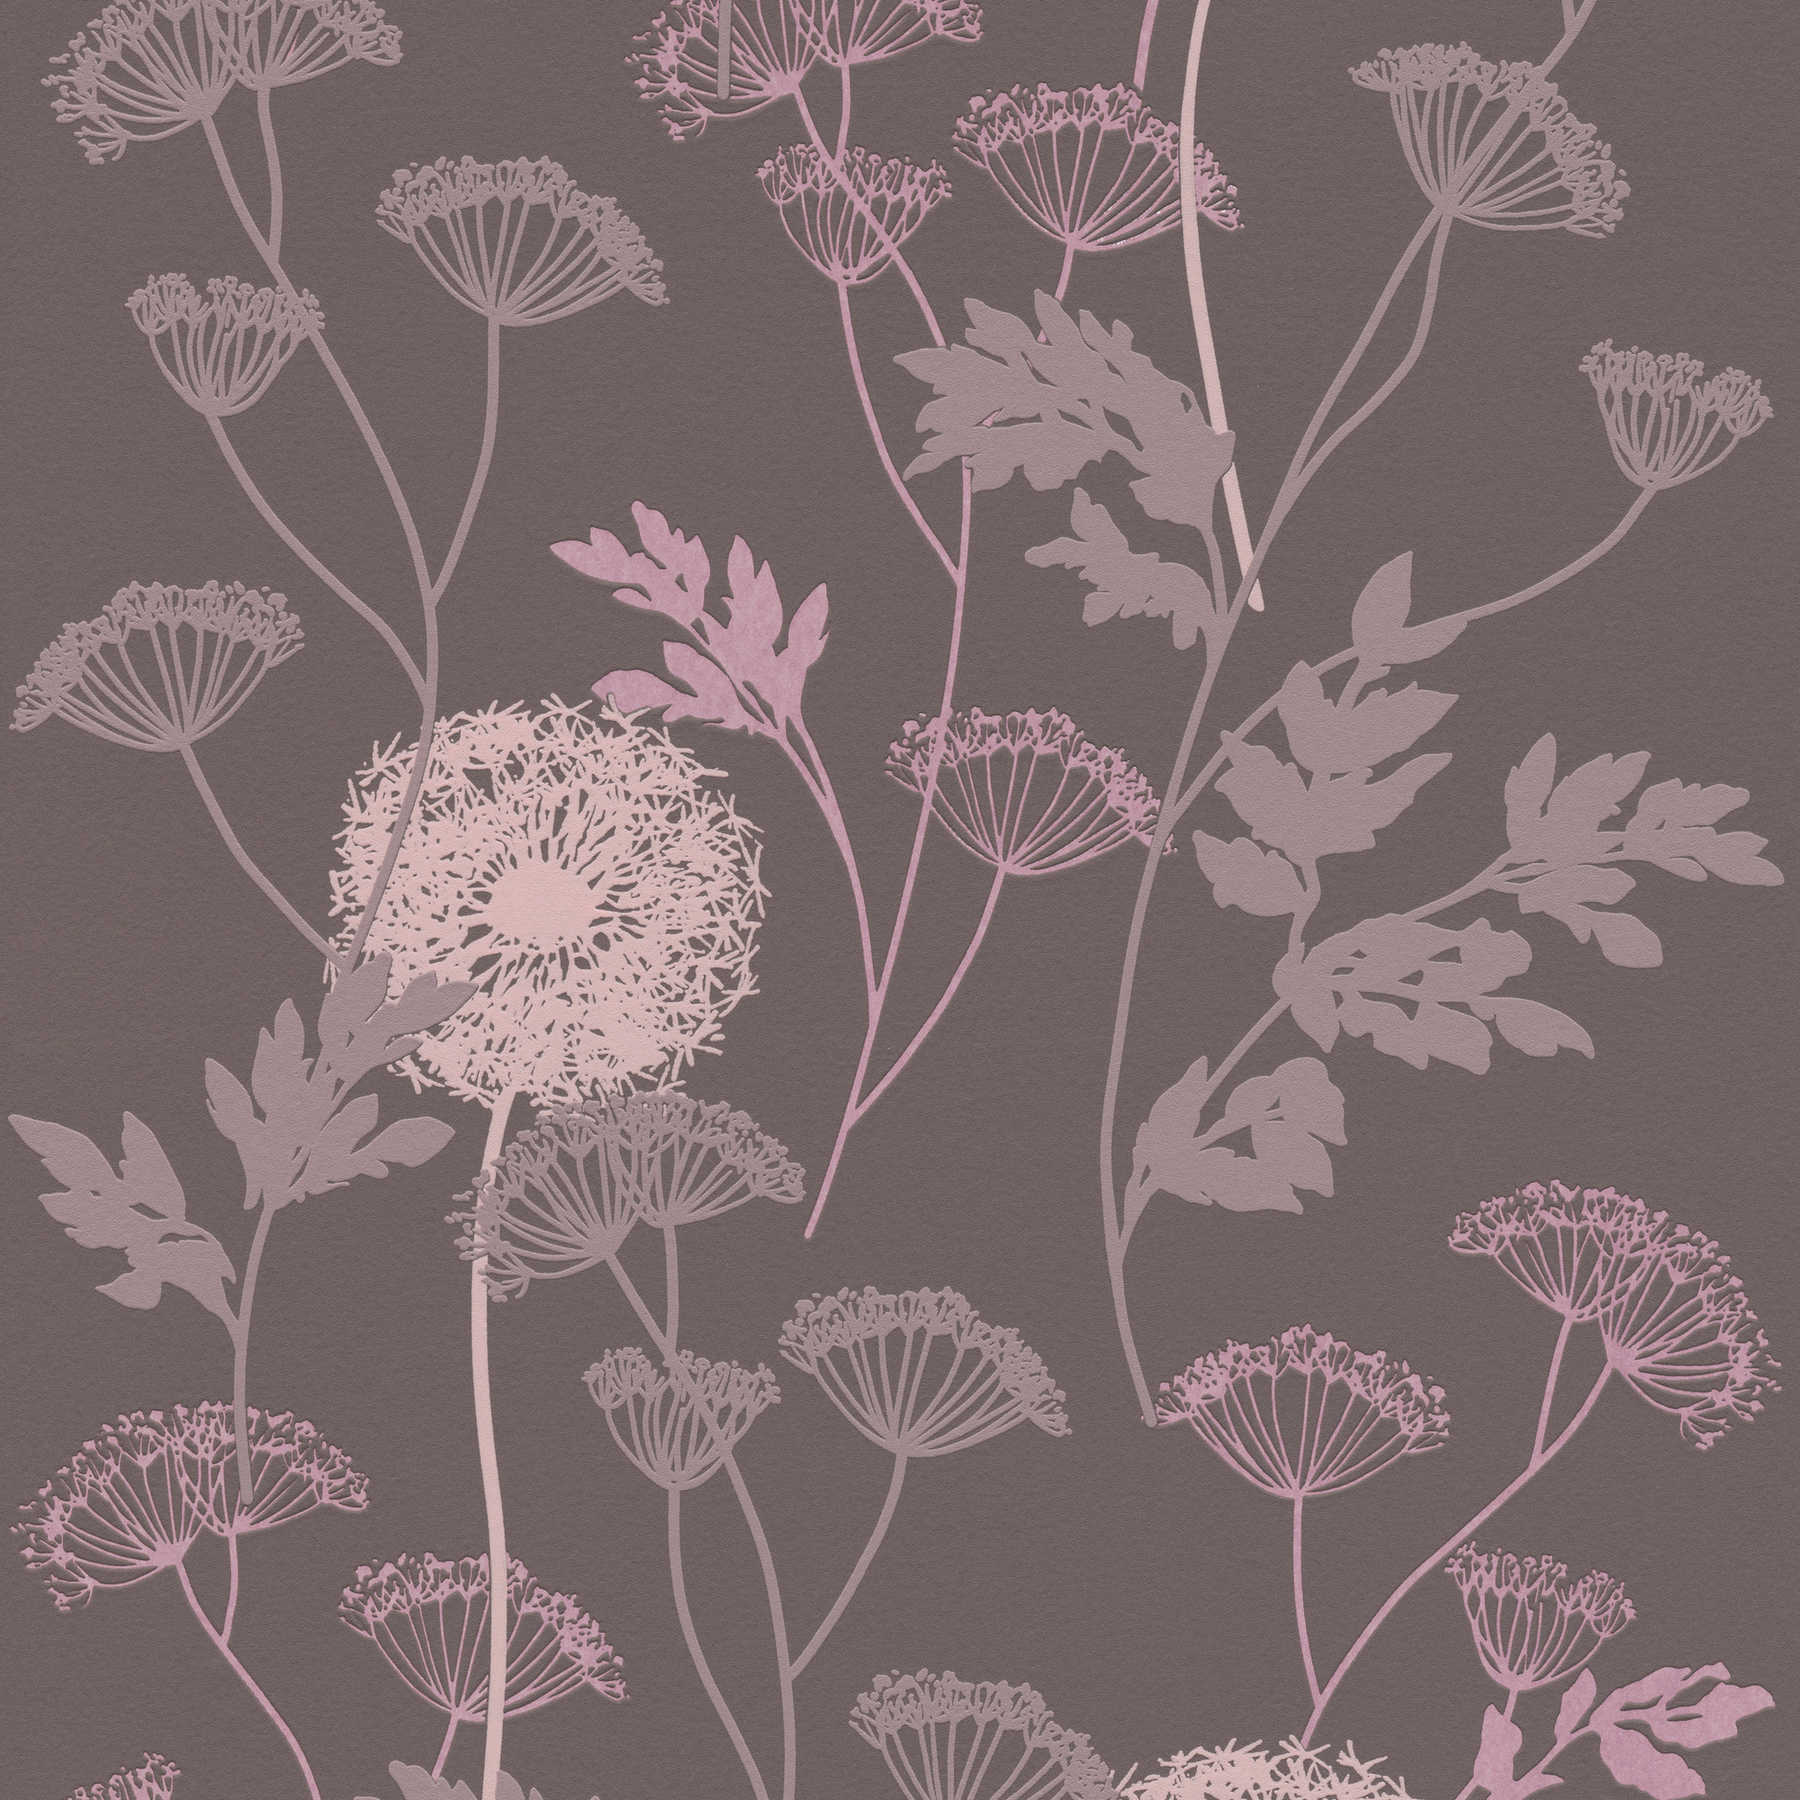 Strukturtapete mit Blüten-Muster in warmen Farben – Braun, Rosa, Beige
